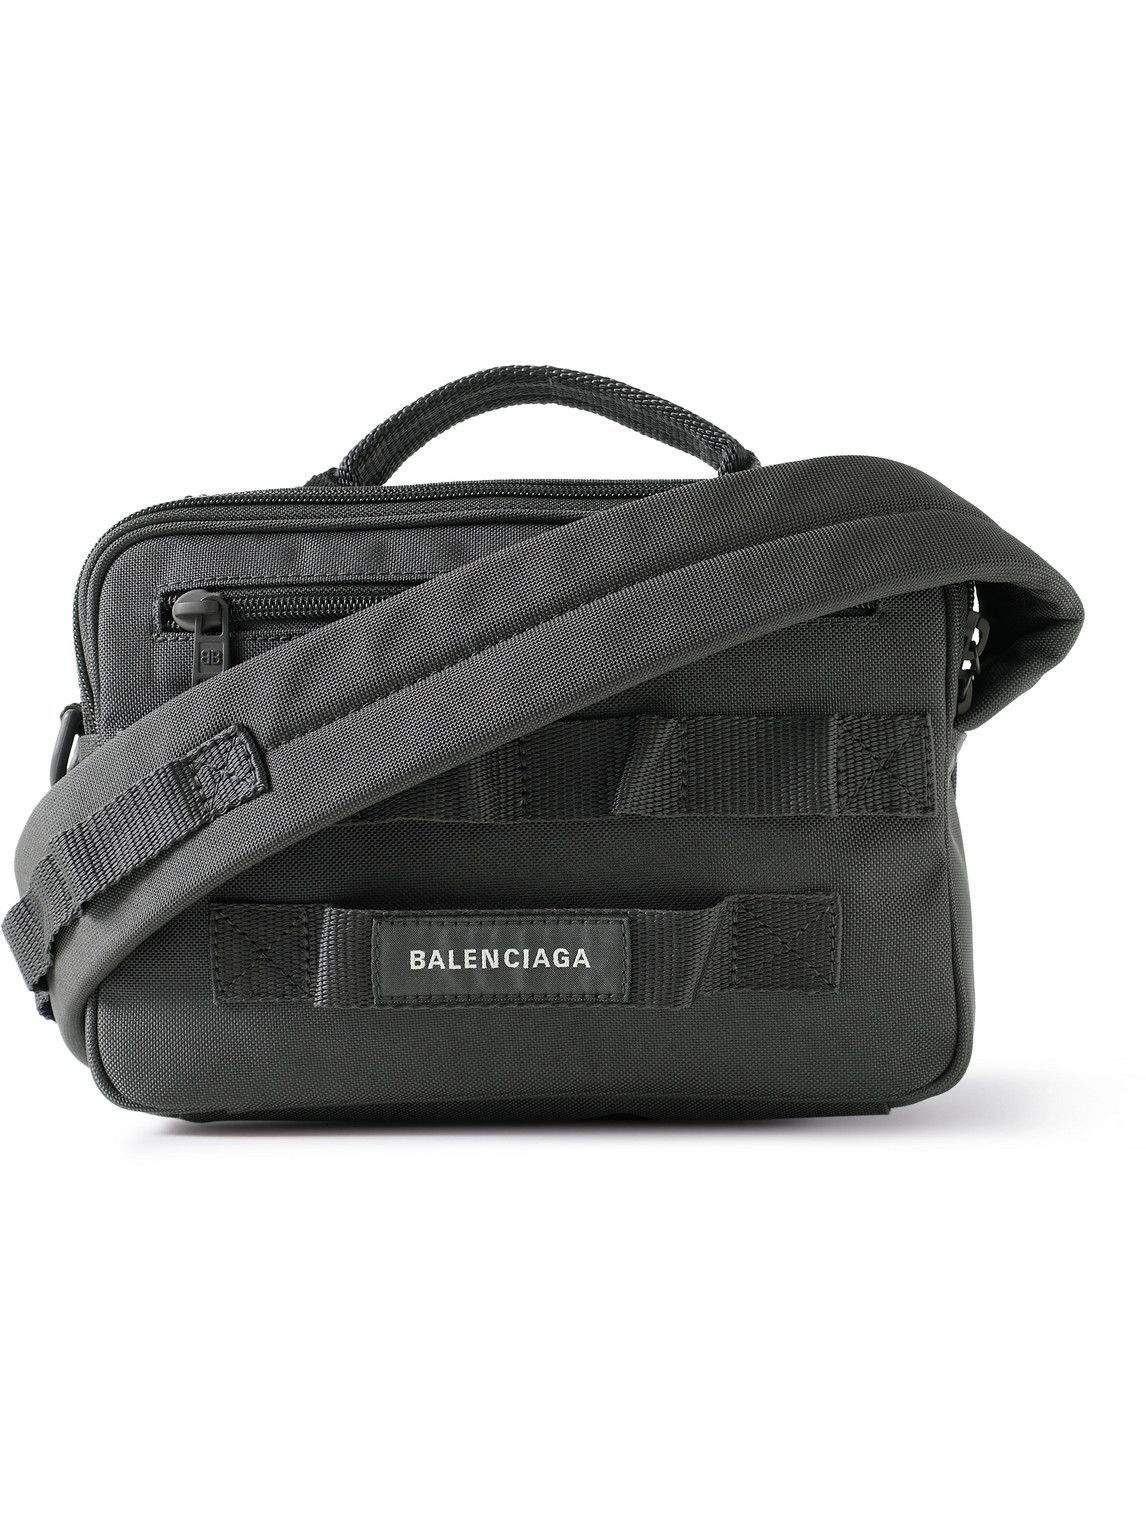 Messenger Bags for Balenciaga Women  Authenticity Guaranteed  eBay